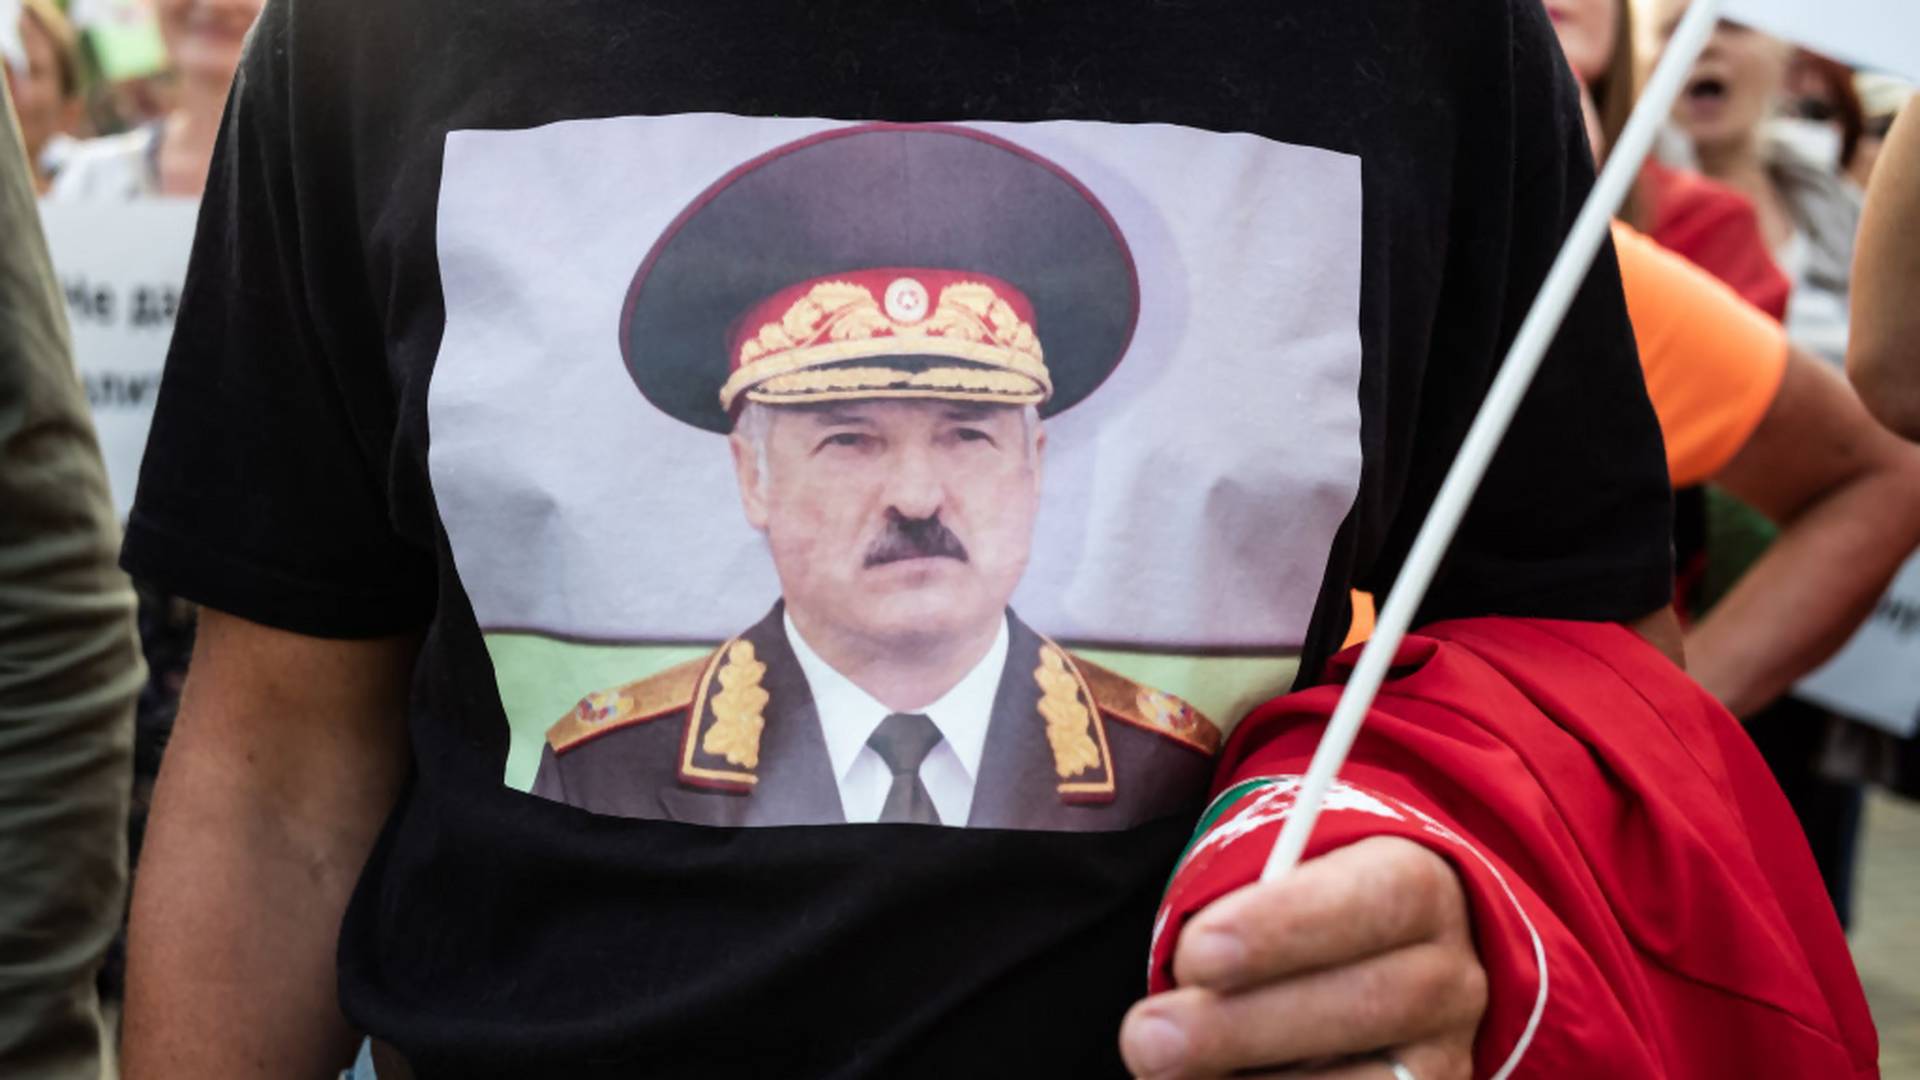 Elcsalt választástól, a gépfegyverrel sétálgató elnökig - ezért szabadultak el az indulatok Fehéroroszországban